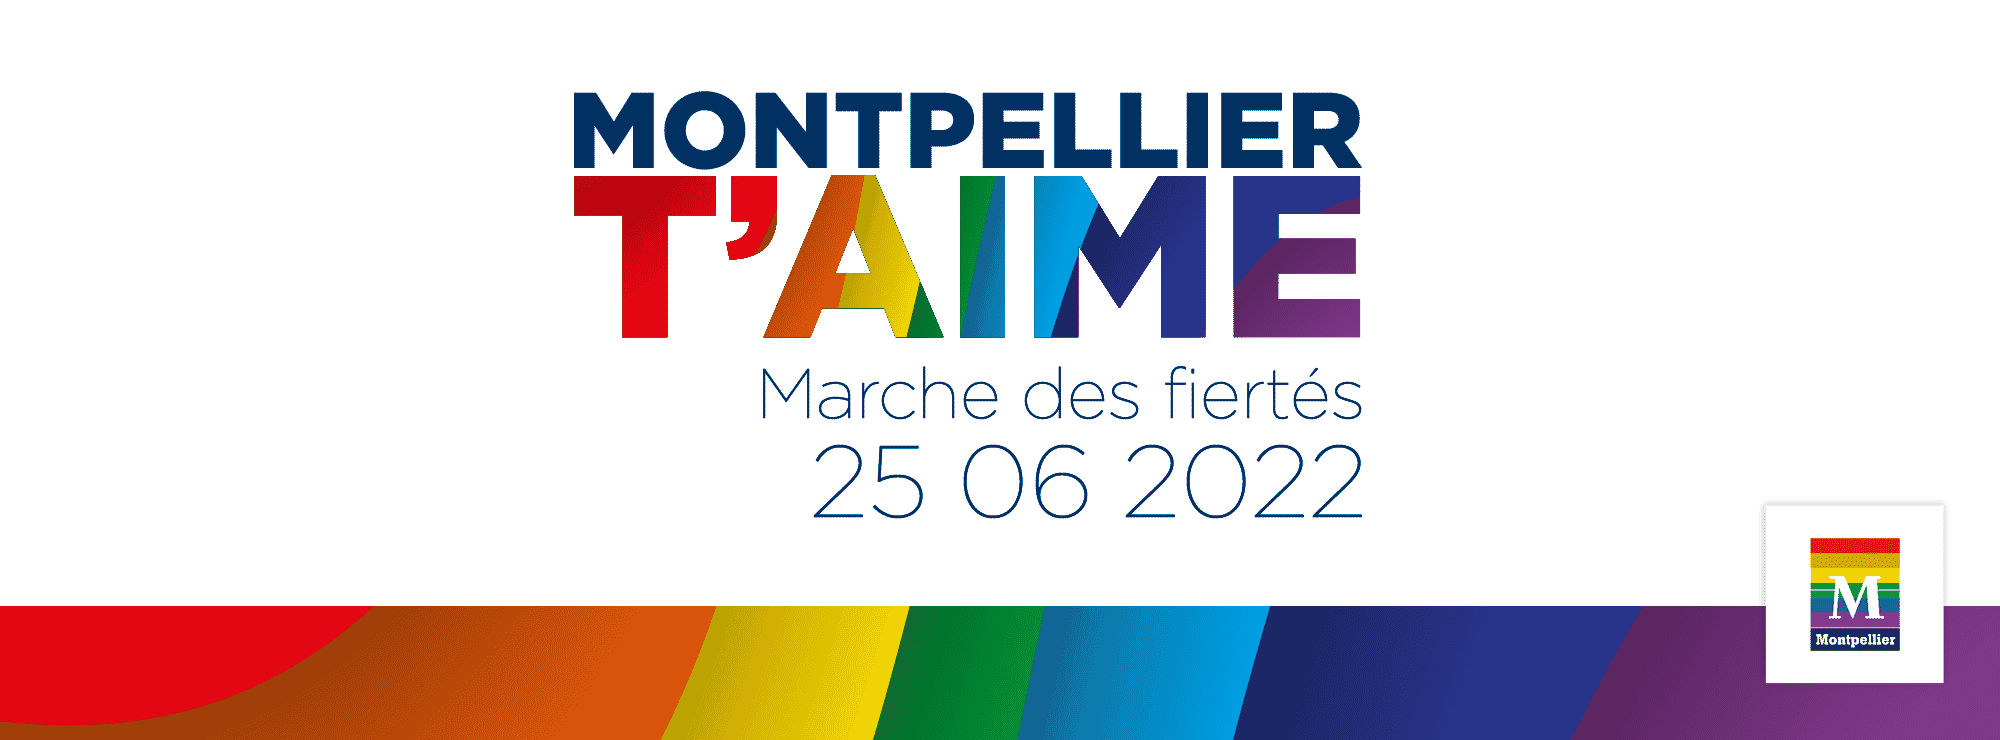 La Marche des fiertés se tient ce samedi 25 juin à Montpellier